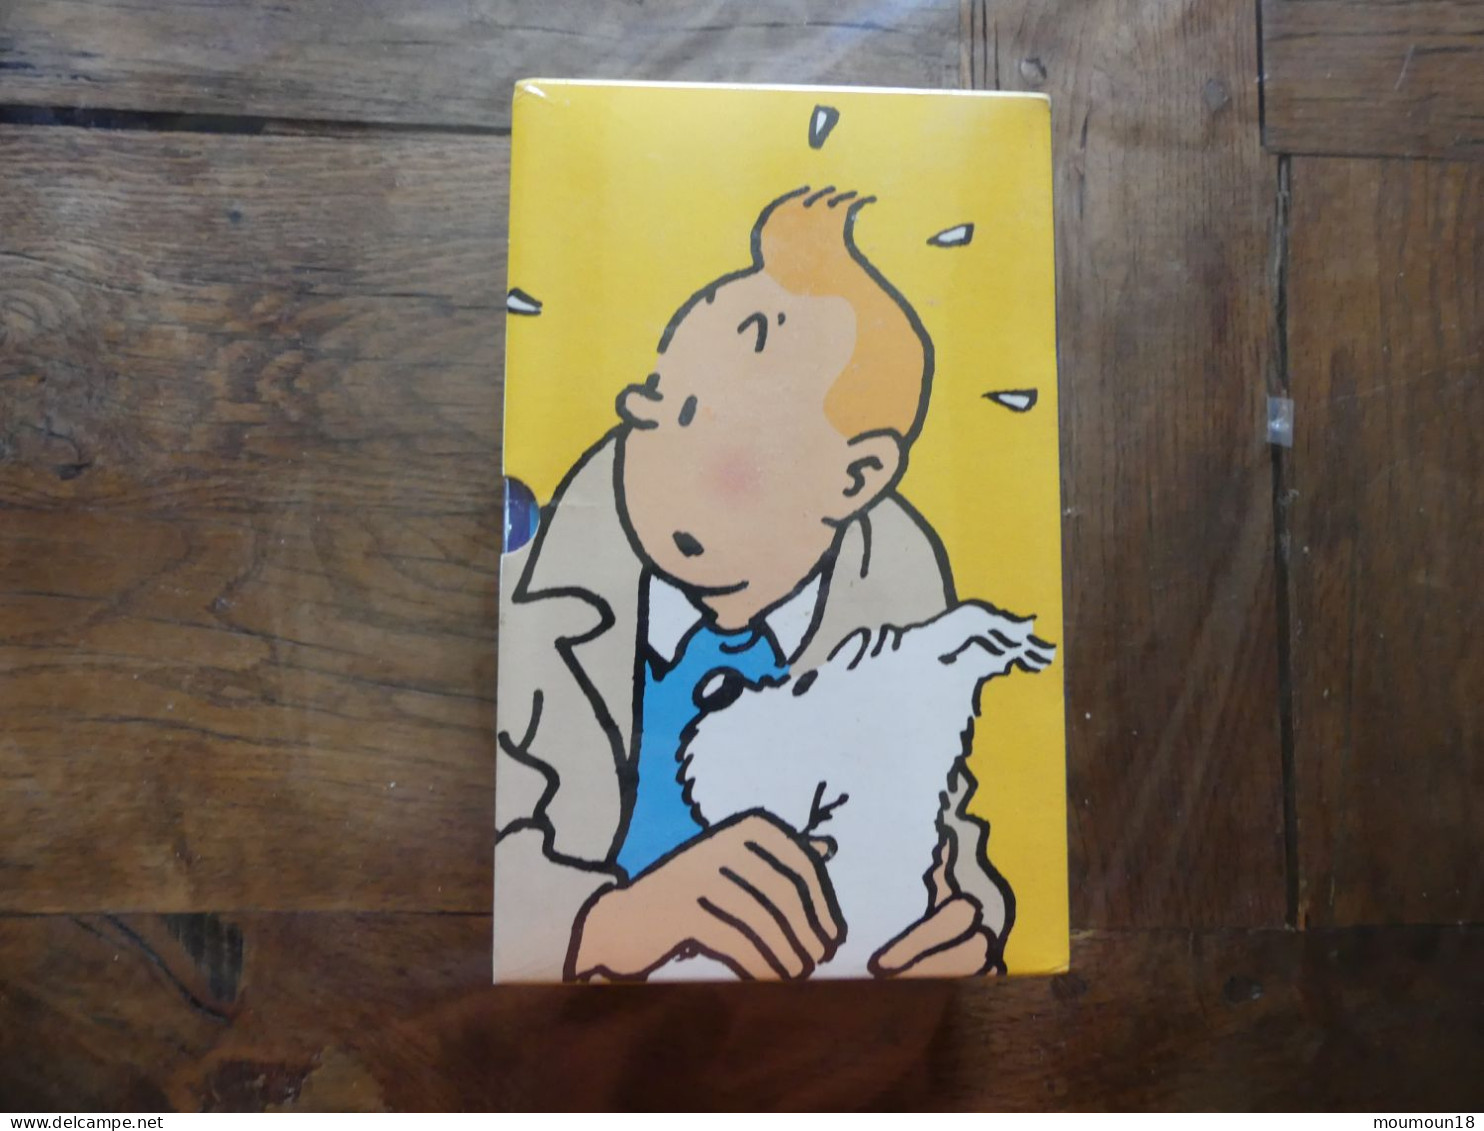 Lot 3 coffrets de 3 video-cassettes VHS Secam Tintin neuves sous blister 18 titres Hergé CITEL Ellipse Programme